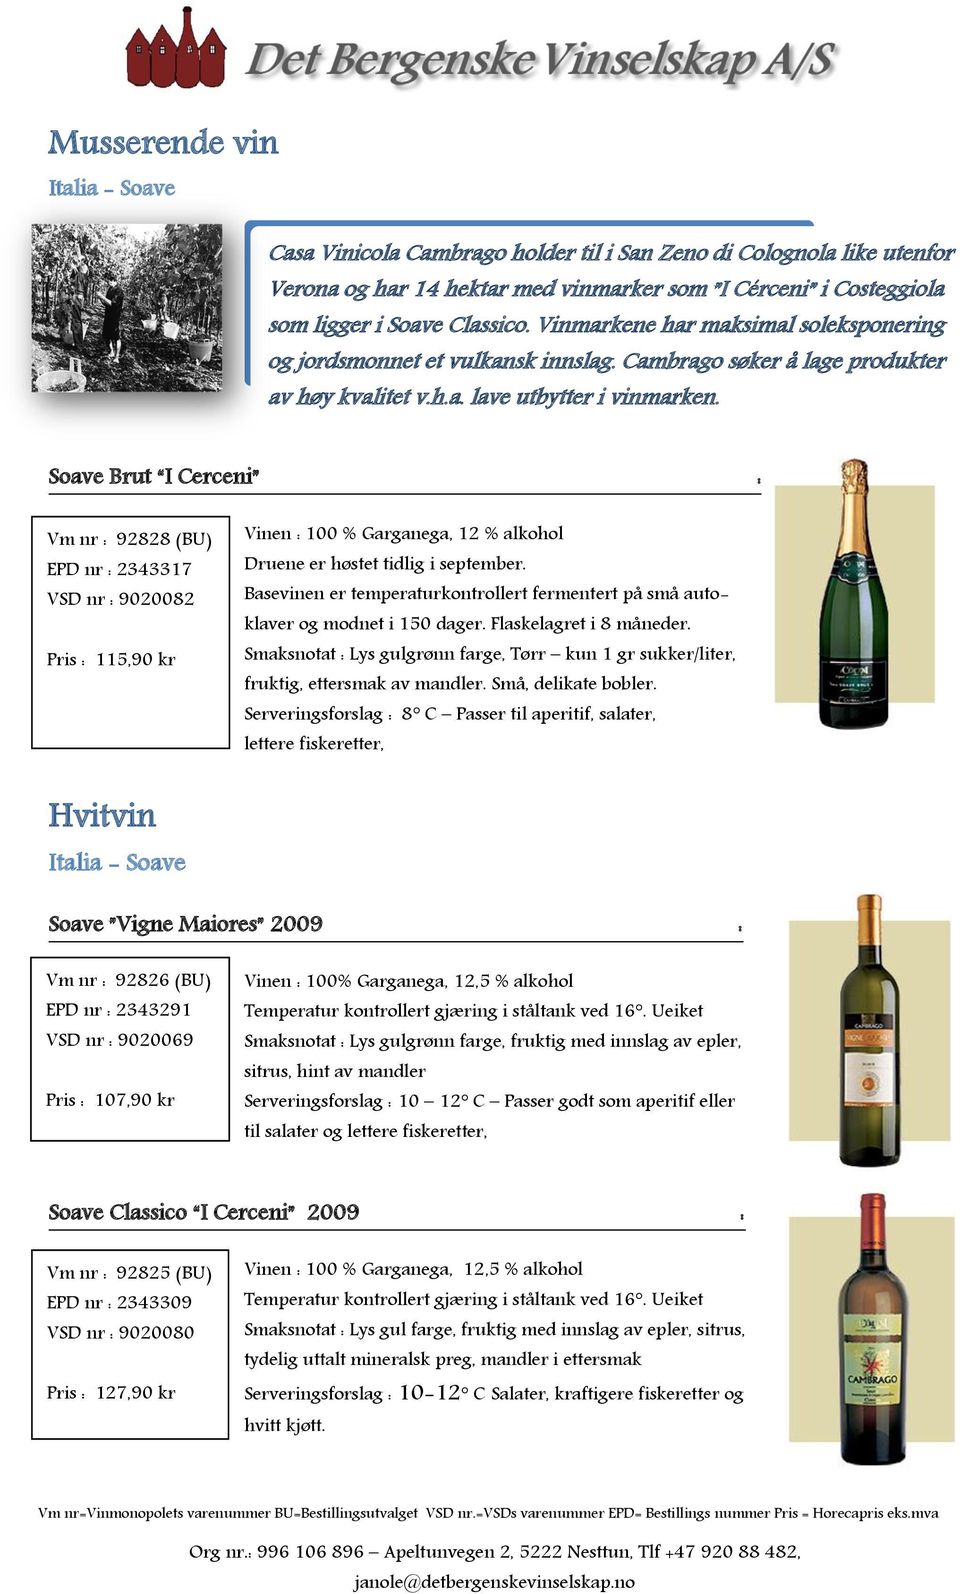 Soave Brut I Cerceni : Vm : 92828 (BU) EPD : 2343317 VSD : 9020082 Pris : 115,90 kr Vinen : 100 % Garganega, 12 % alkohol Druene er høstet tidlig i september.